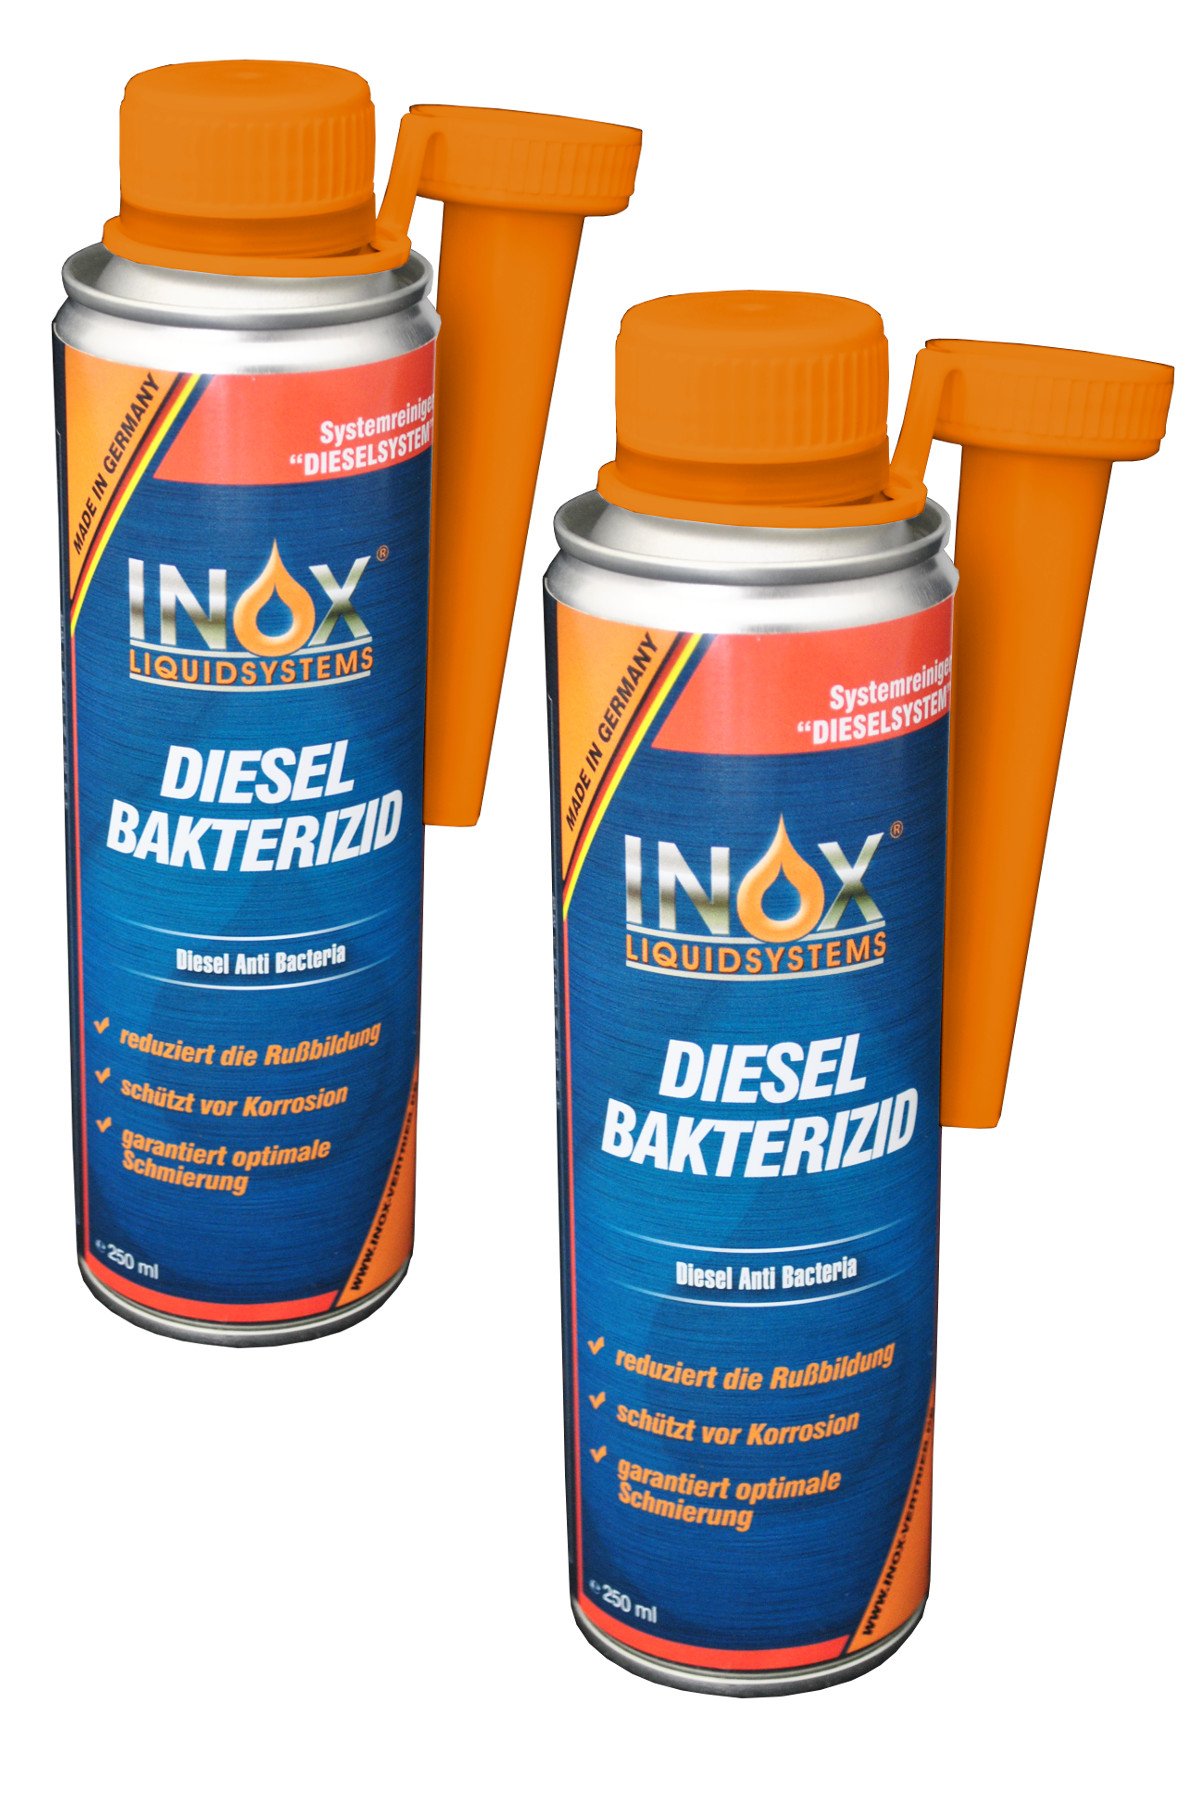 INOX® Diesel Bakterizid, 2 x 250ml - Additiv Desinfektion für Dieselsystem, Auto und Heizölsysteme von INOX-LIQUIDSYSTEMS